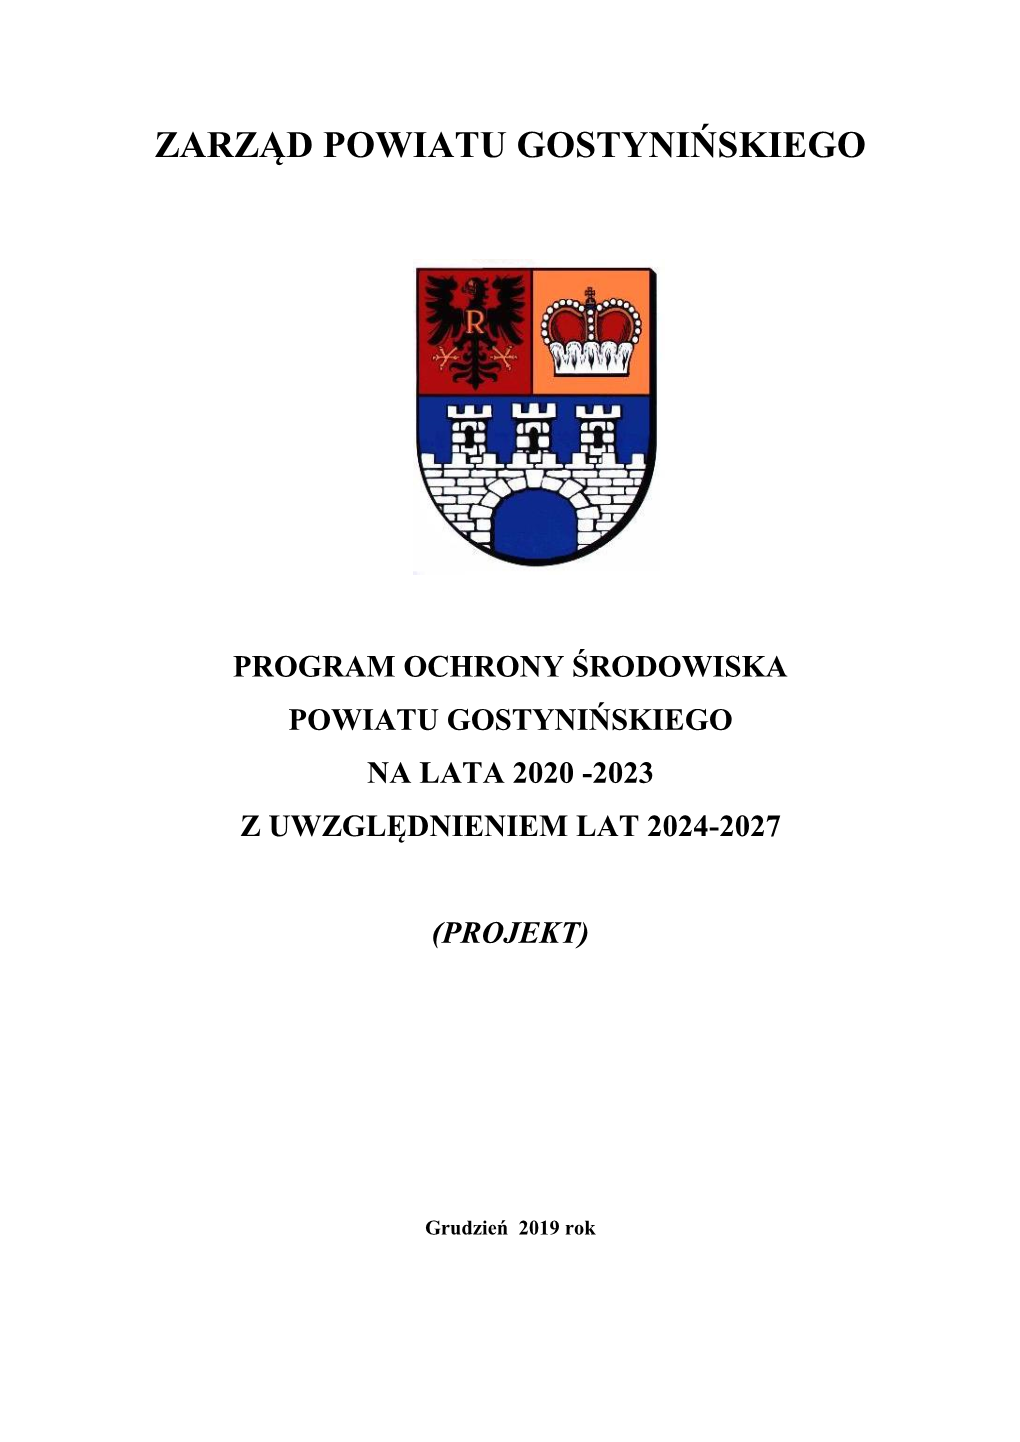 Program Ochrony Środowiska Powiatu Gostynińskiego Na Lata 2020 -2023 Z Uwzględnieniem Lat 2024-2027